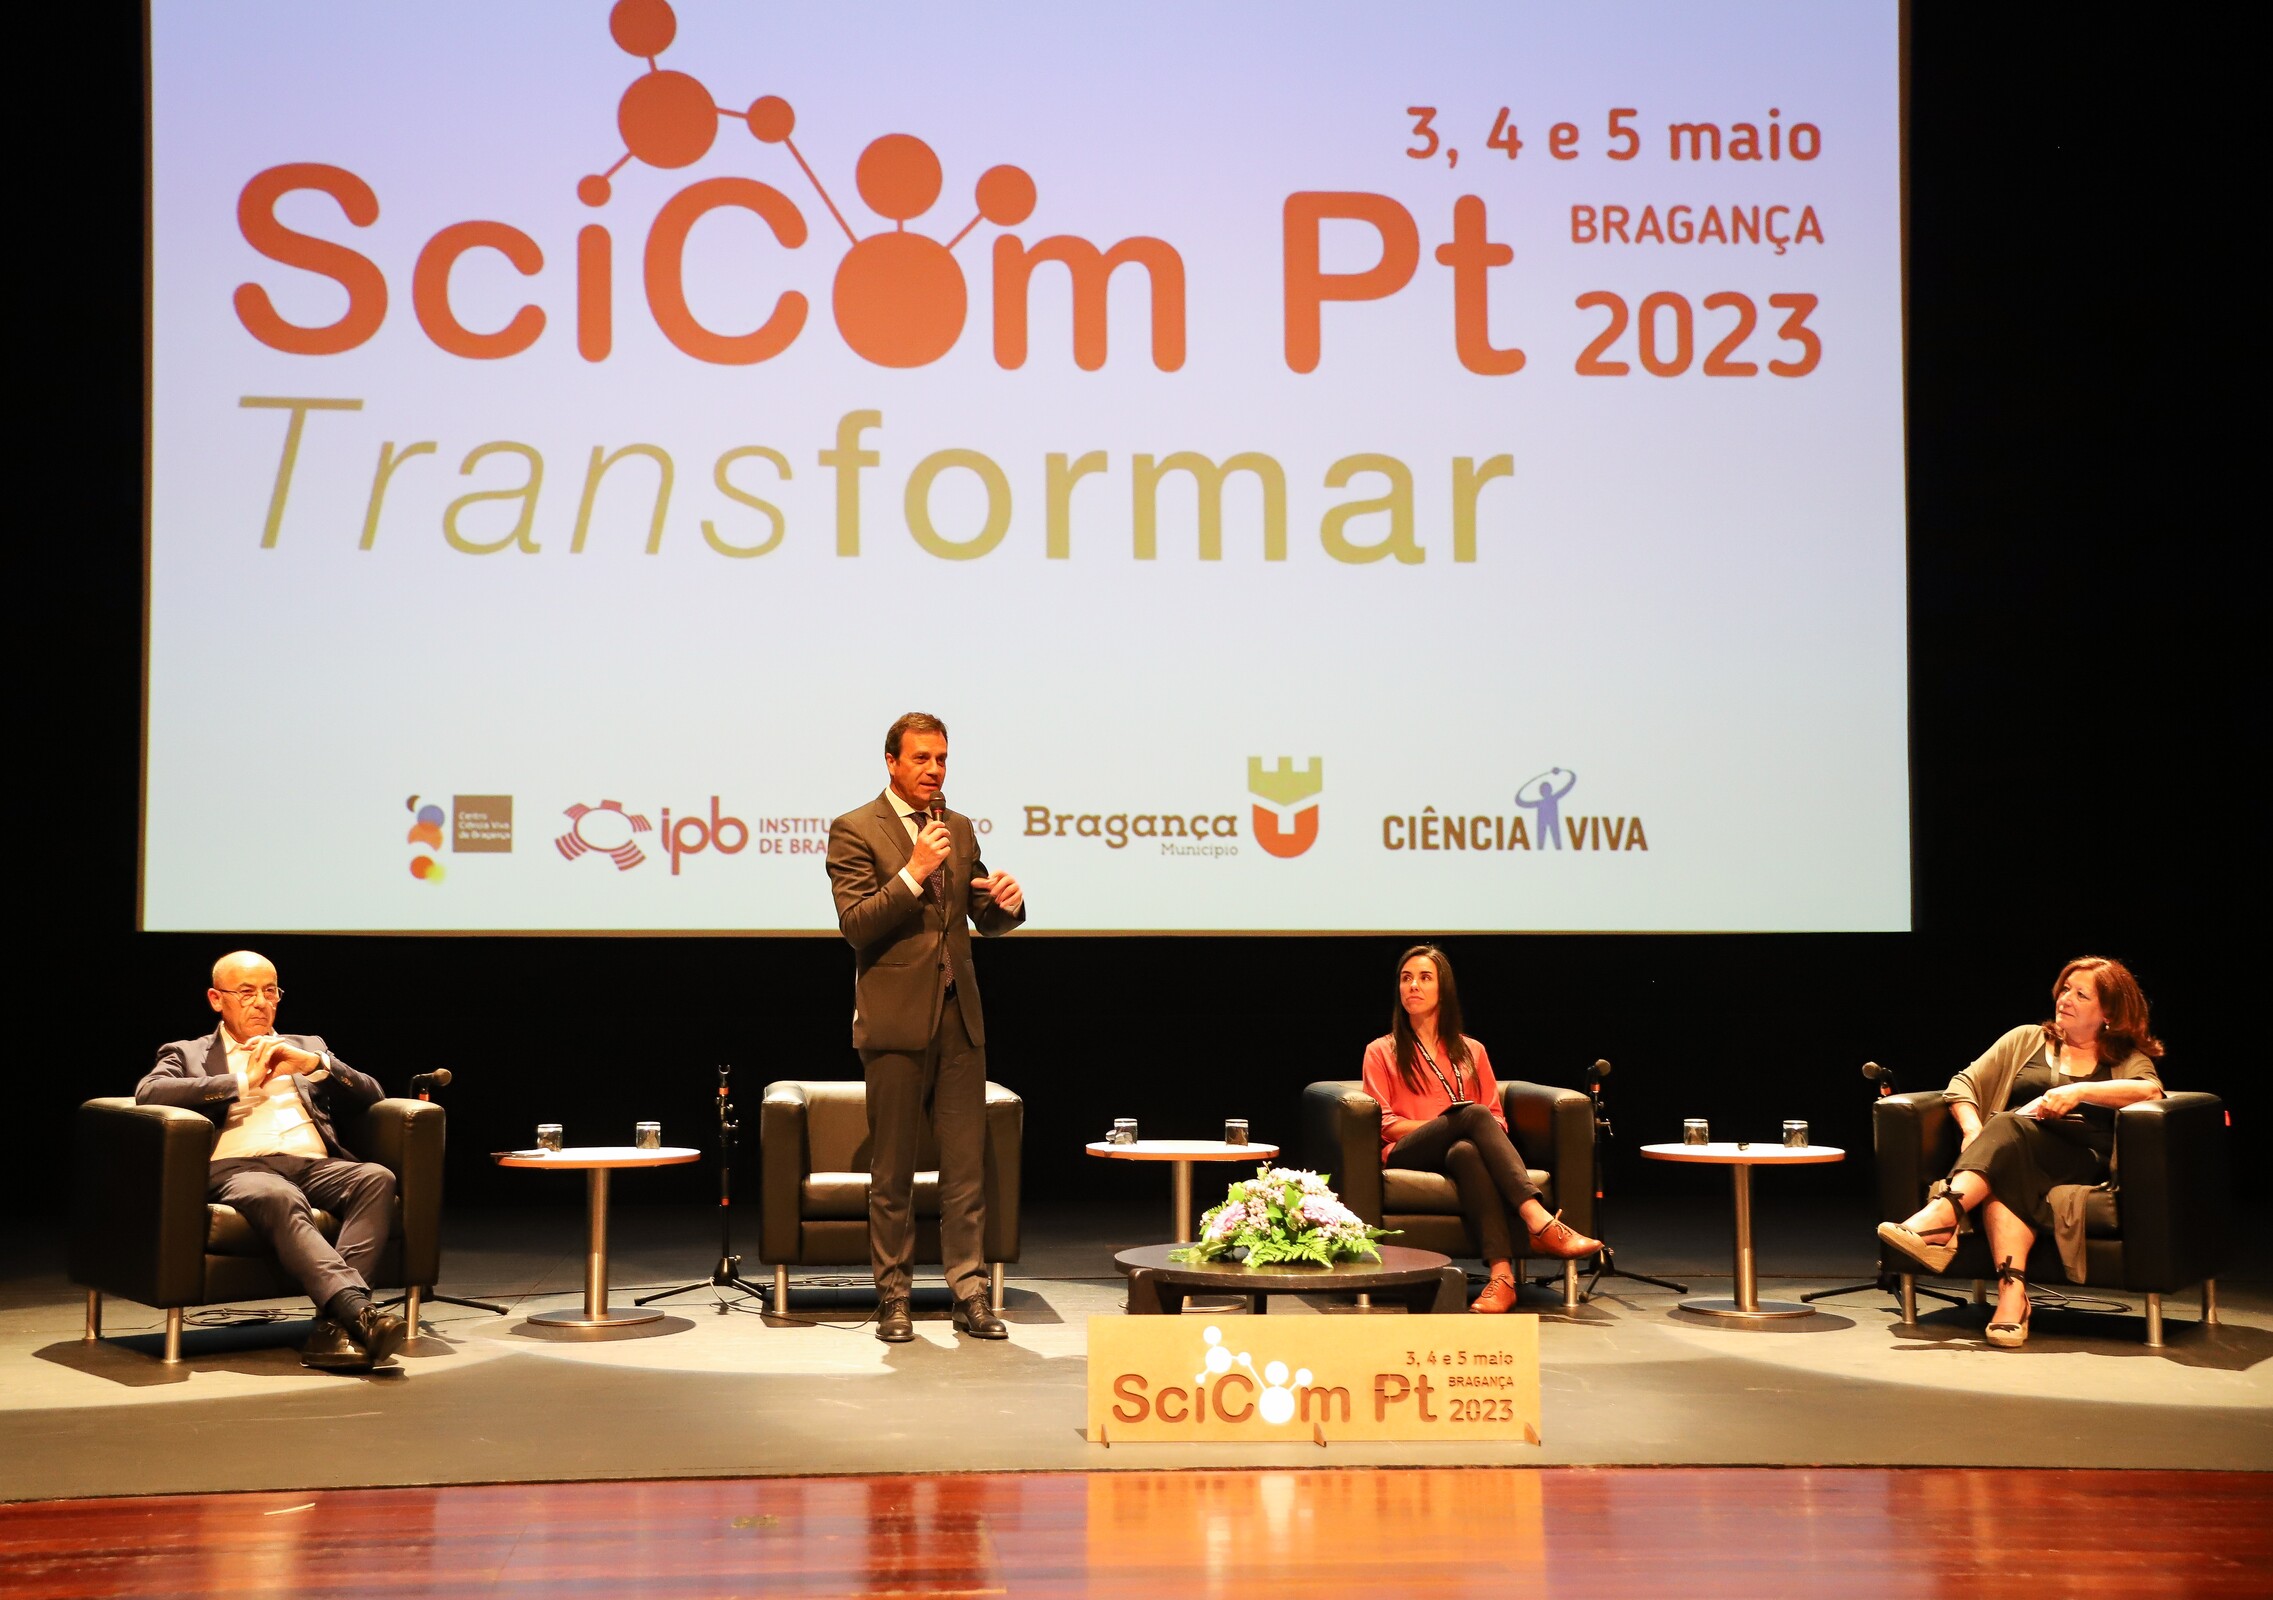 SciComPt 2023 - Congresso de Comunicação de Ciência